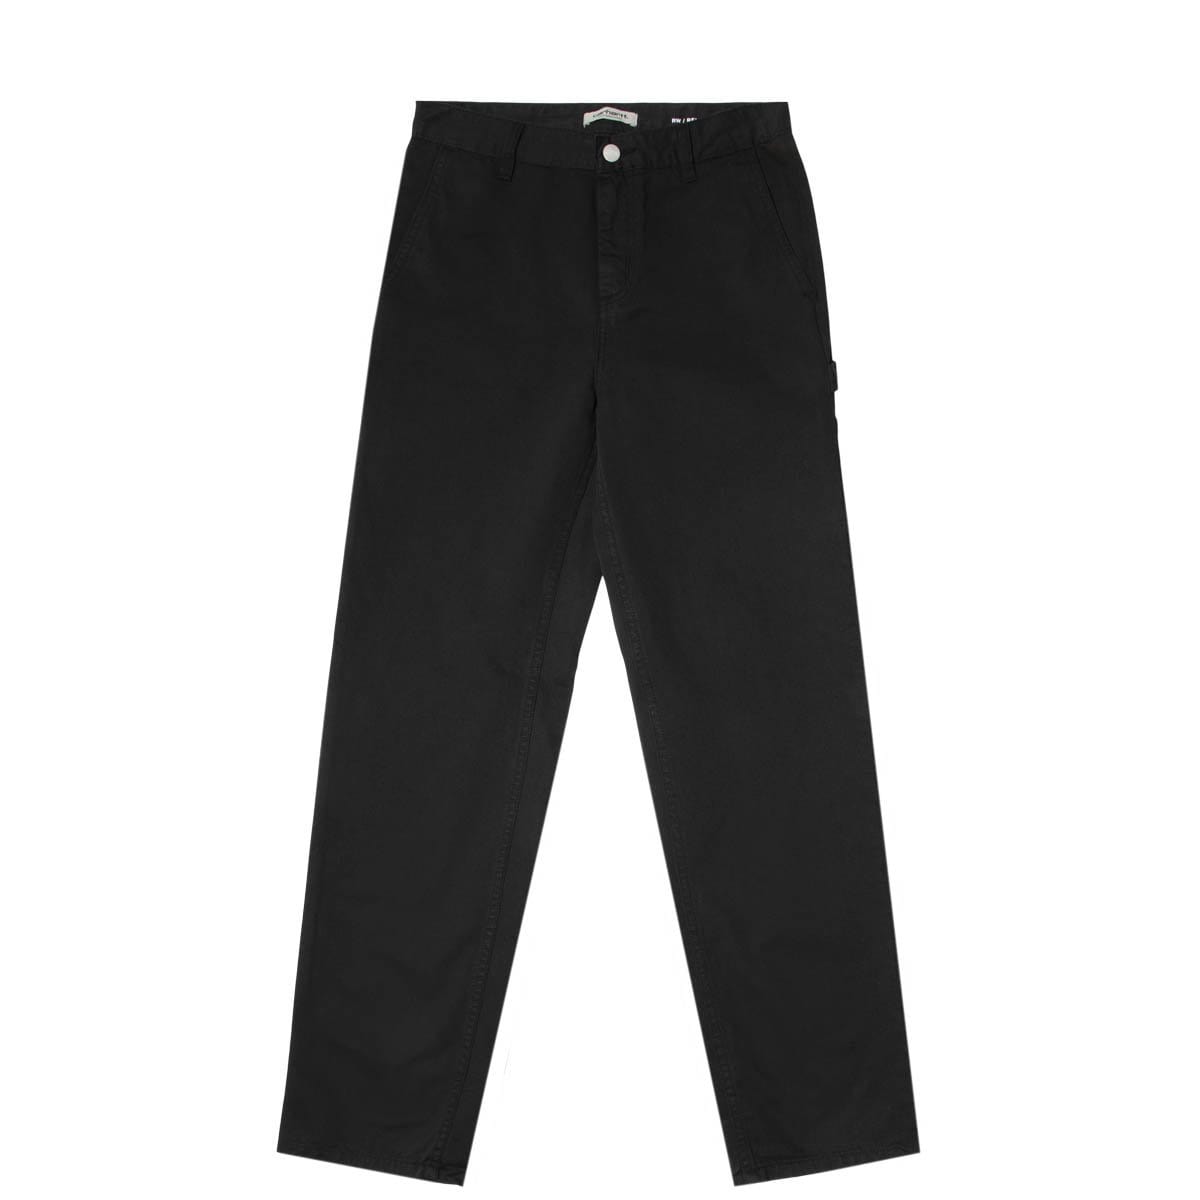 Carhartt WIP Women's Pierce Pants in Black, Rinsed